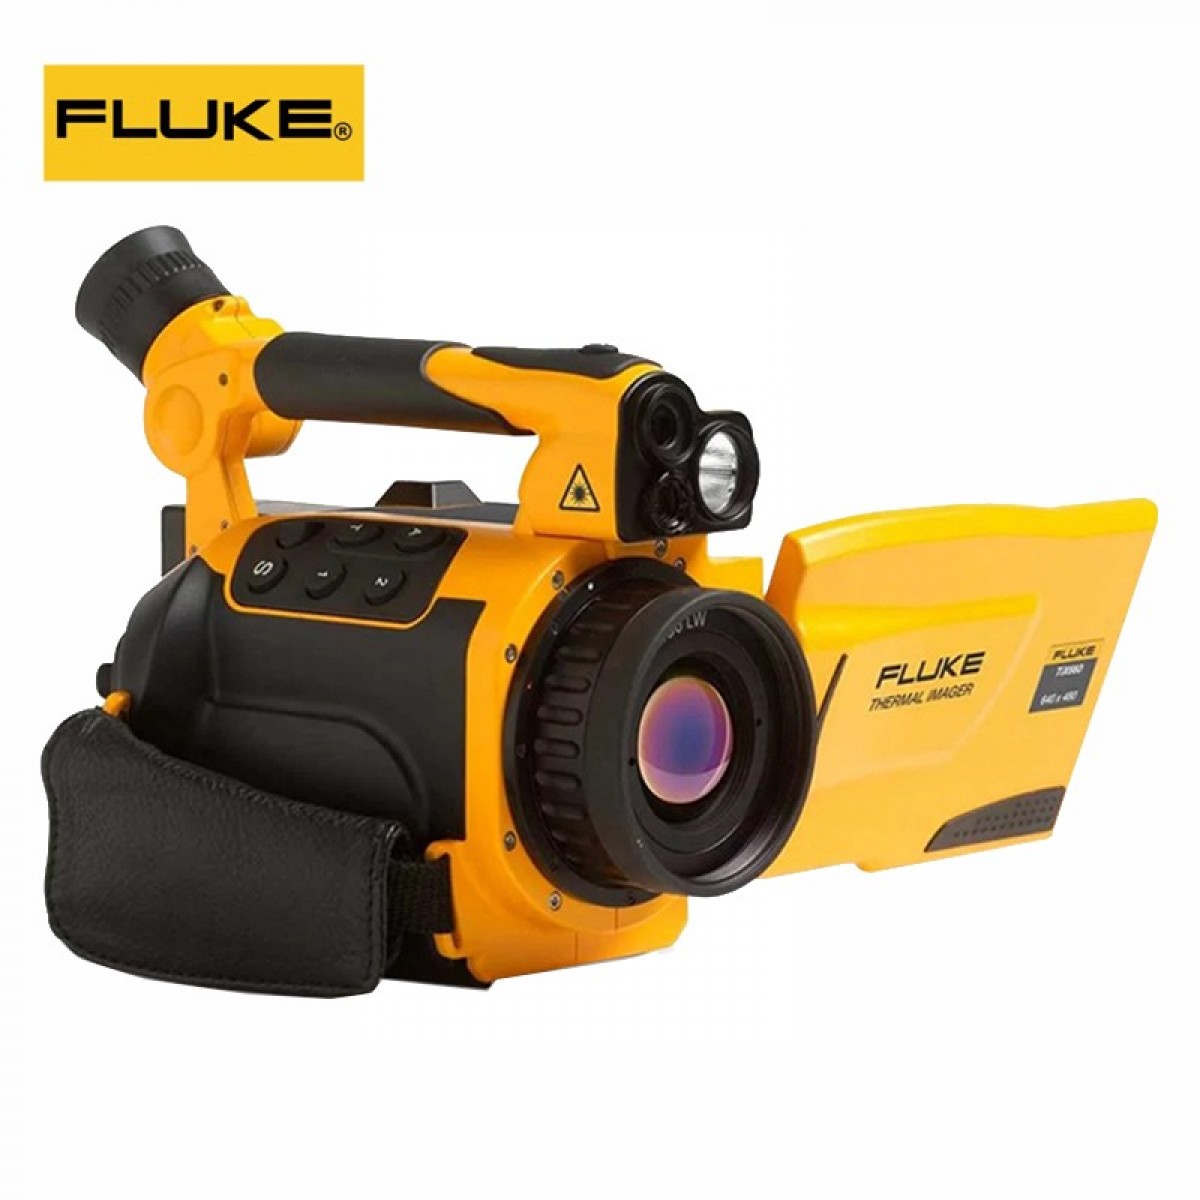 FLUKE FLUKE TIX640(9hz) 红外热像仪